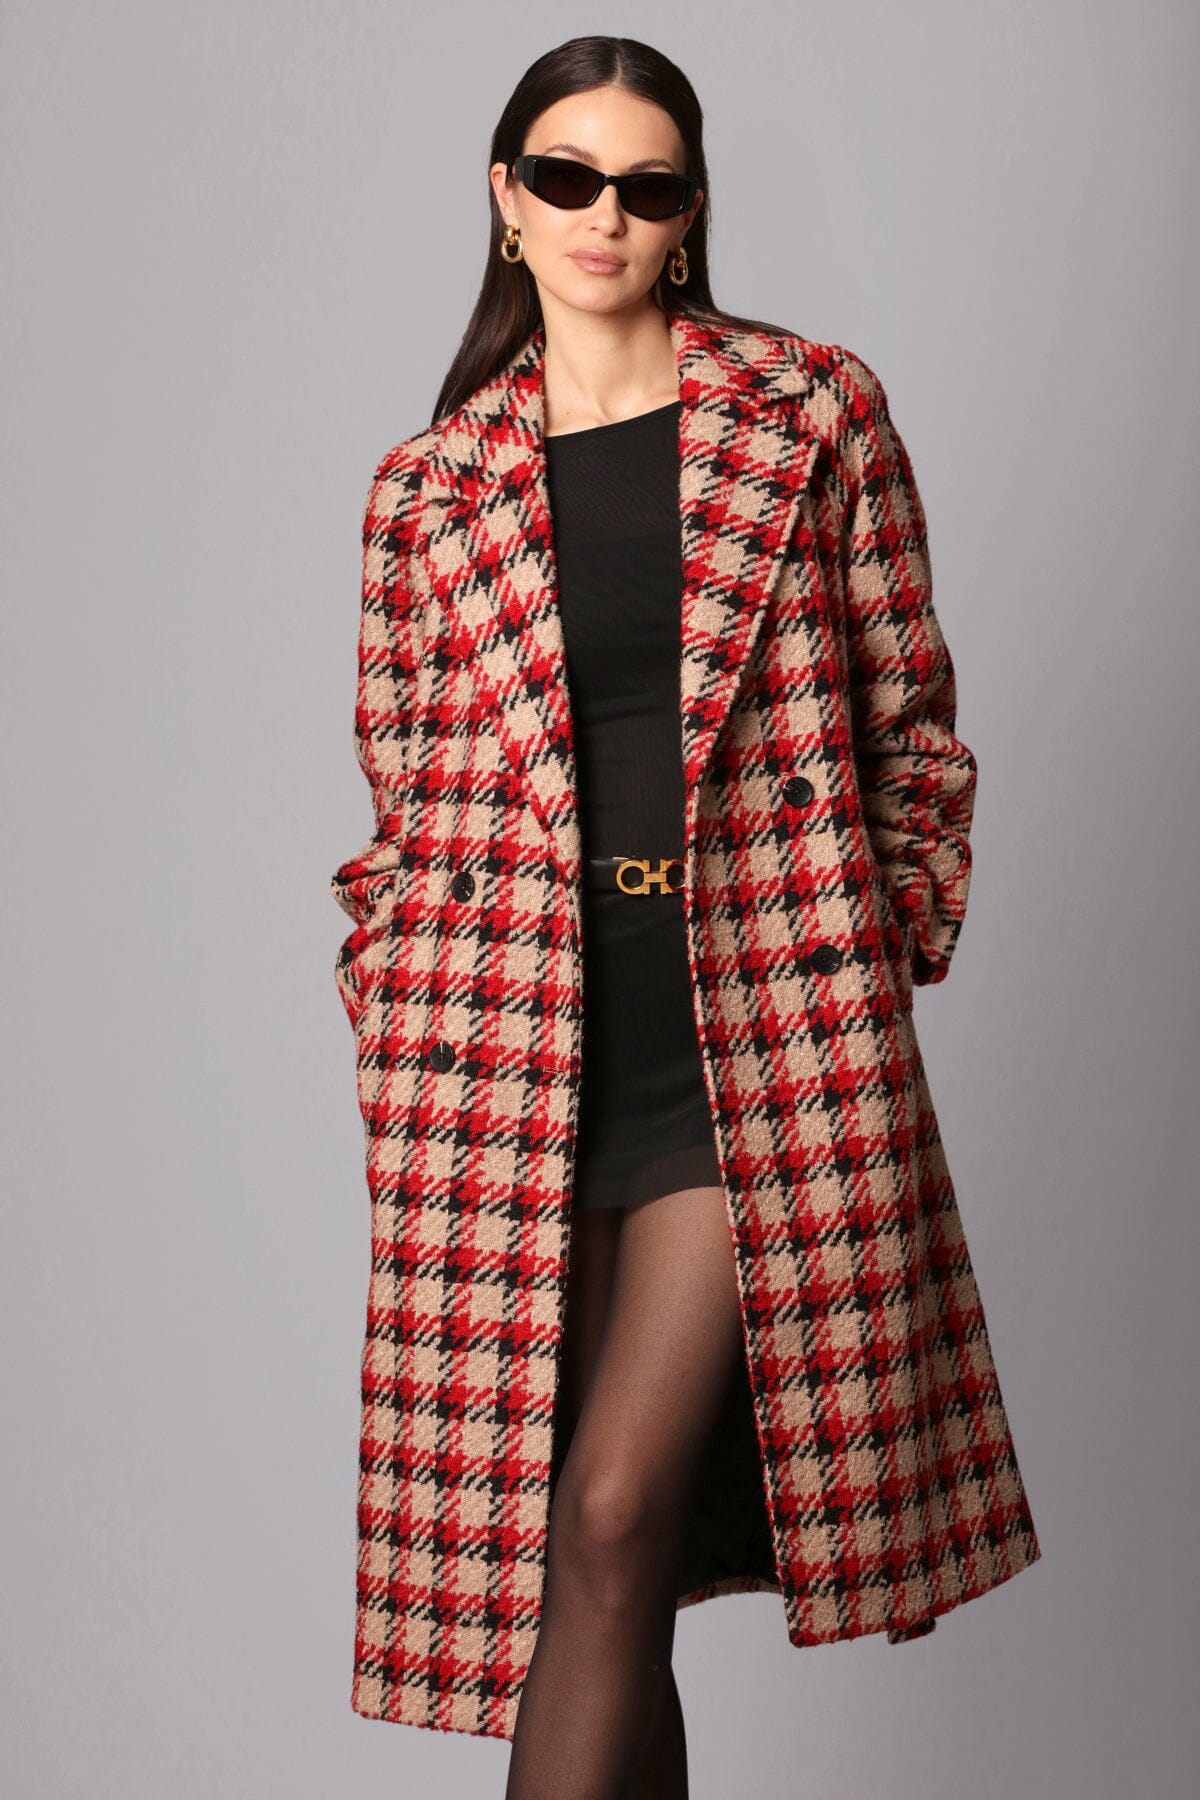 plaid jacquard belted walker coat camel beige black red plaid - figure flattering designer fashion long coats for women